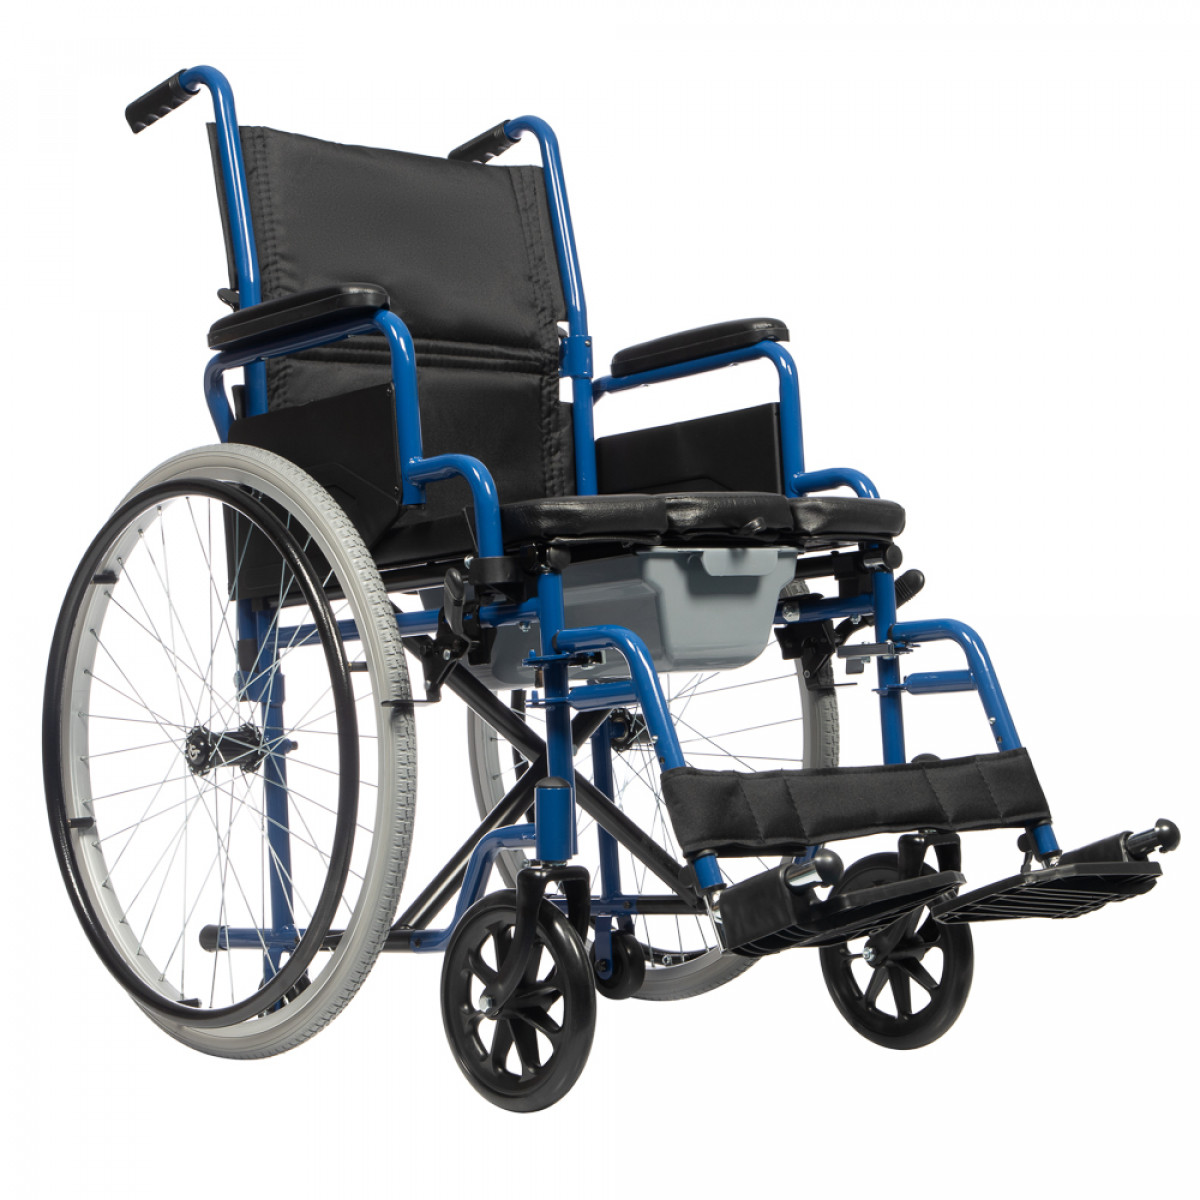 Купить сидение для инвалида. Кресло-стул "Ortonica" tu 55 с санитарным оснащением. Кресло-коляска Ortonica tu 55. Кресла инвалидные с санитарным оснащением Ortonica.